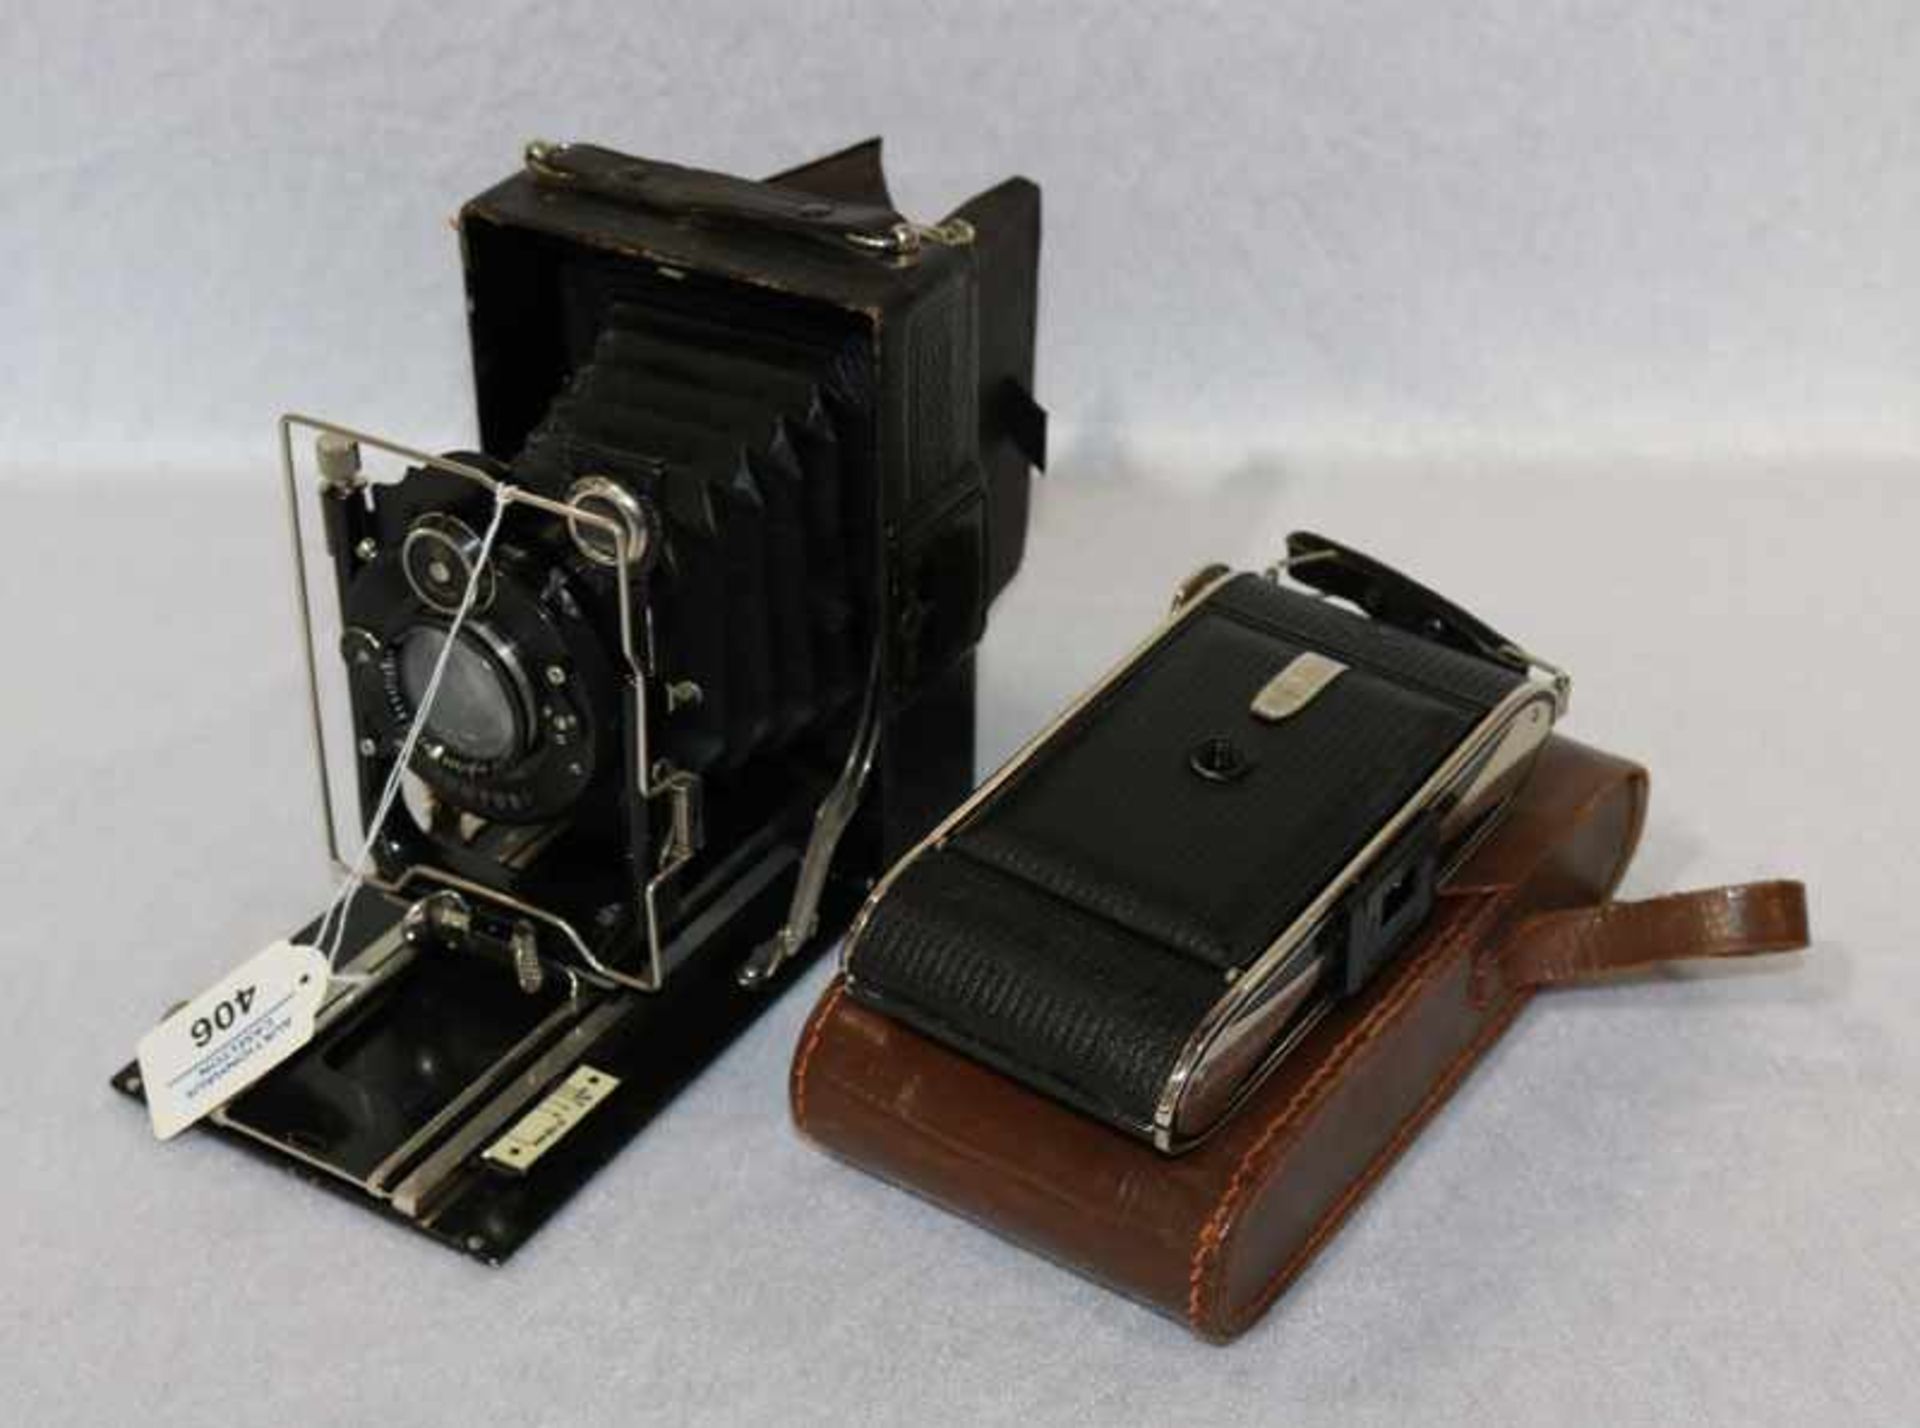 Compur Boxkamera und Agfa Billy-Record Kamera mit Tasche, Gebrauchsspuren